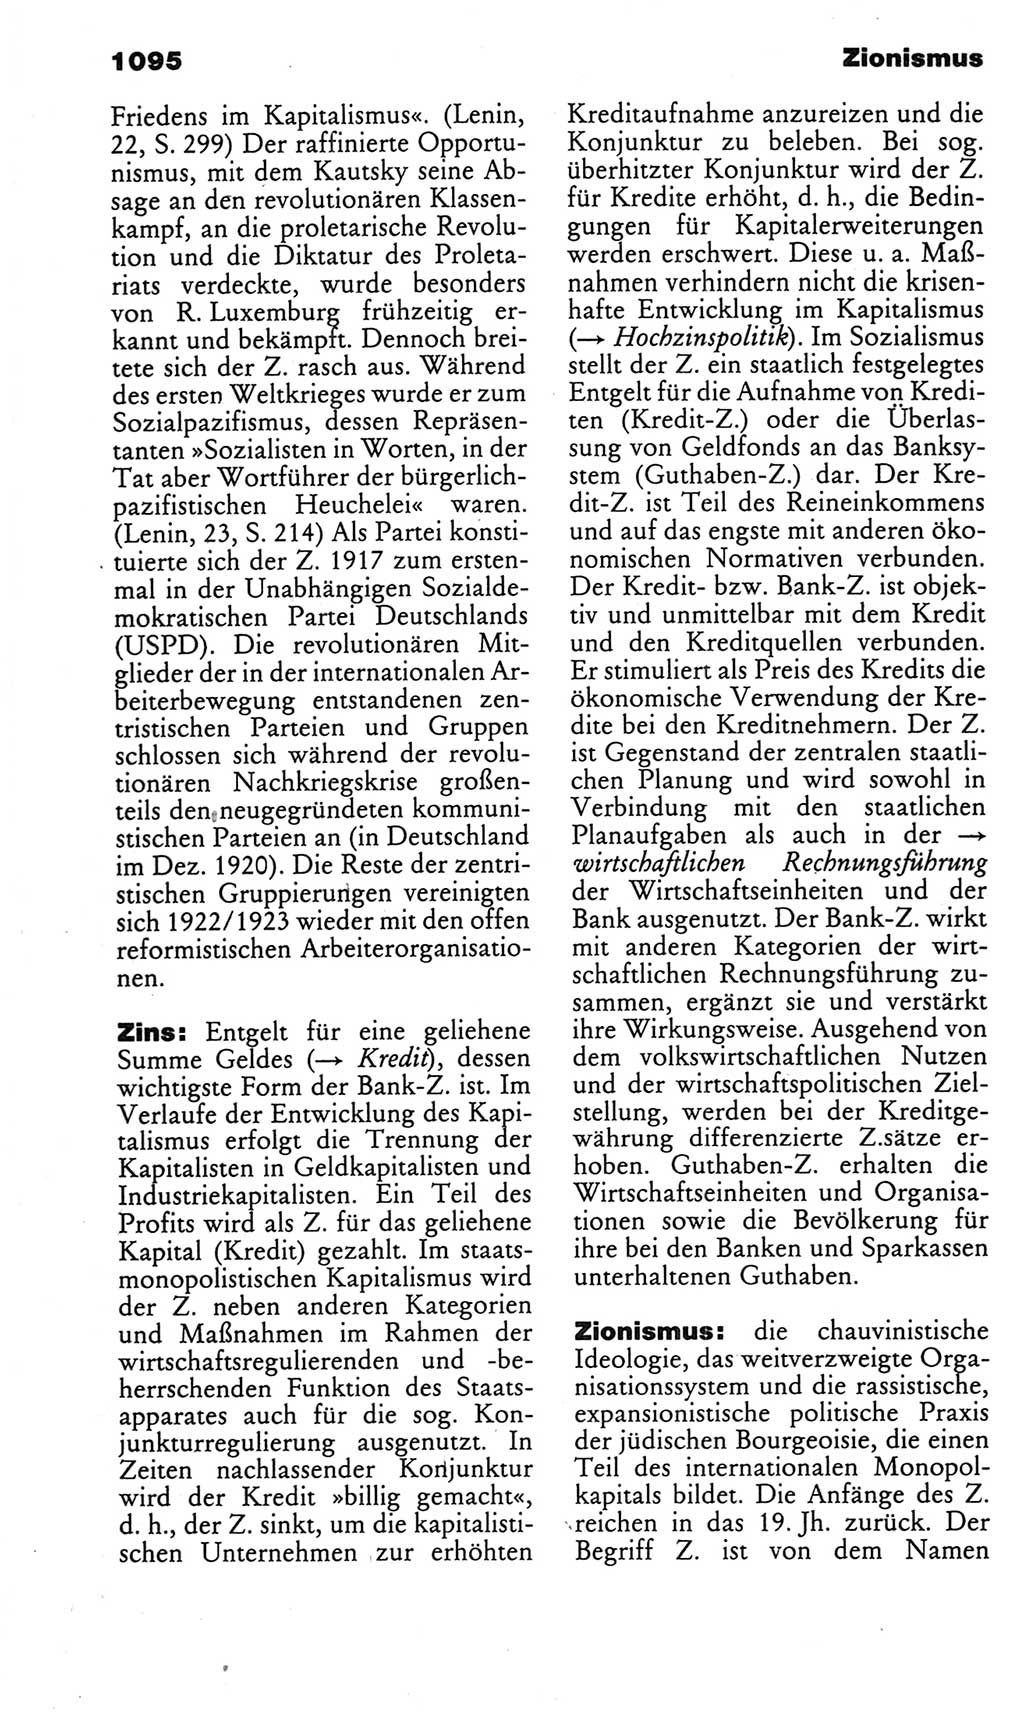 Kleines politisches Wörterbuch [Deutsche Demokratische Republik (DDR)] 1985, Seite 1095 (Kl. pol. Wb. DDR 1985, S. 1095)